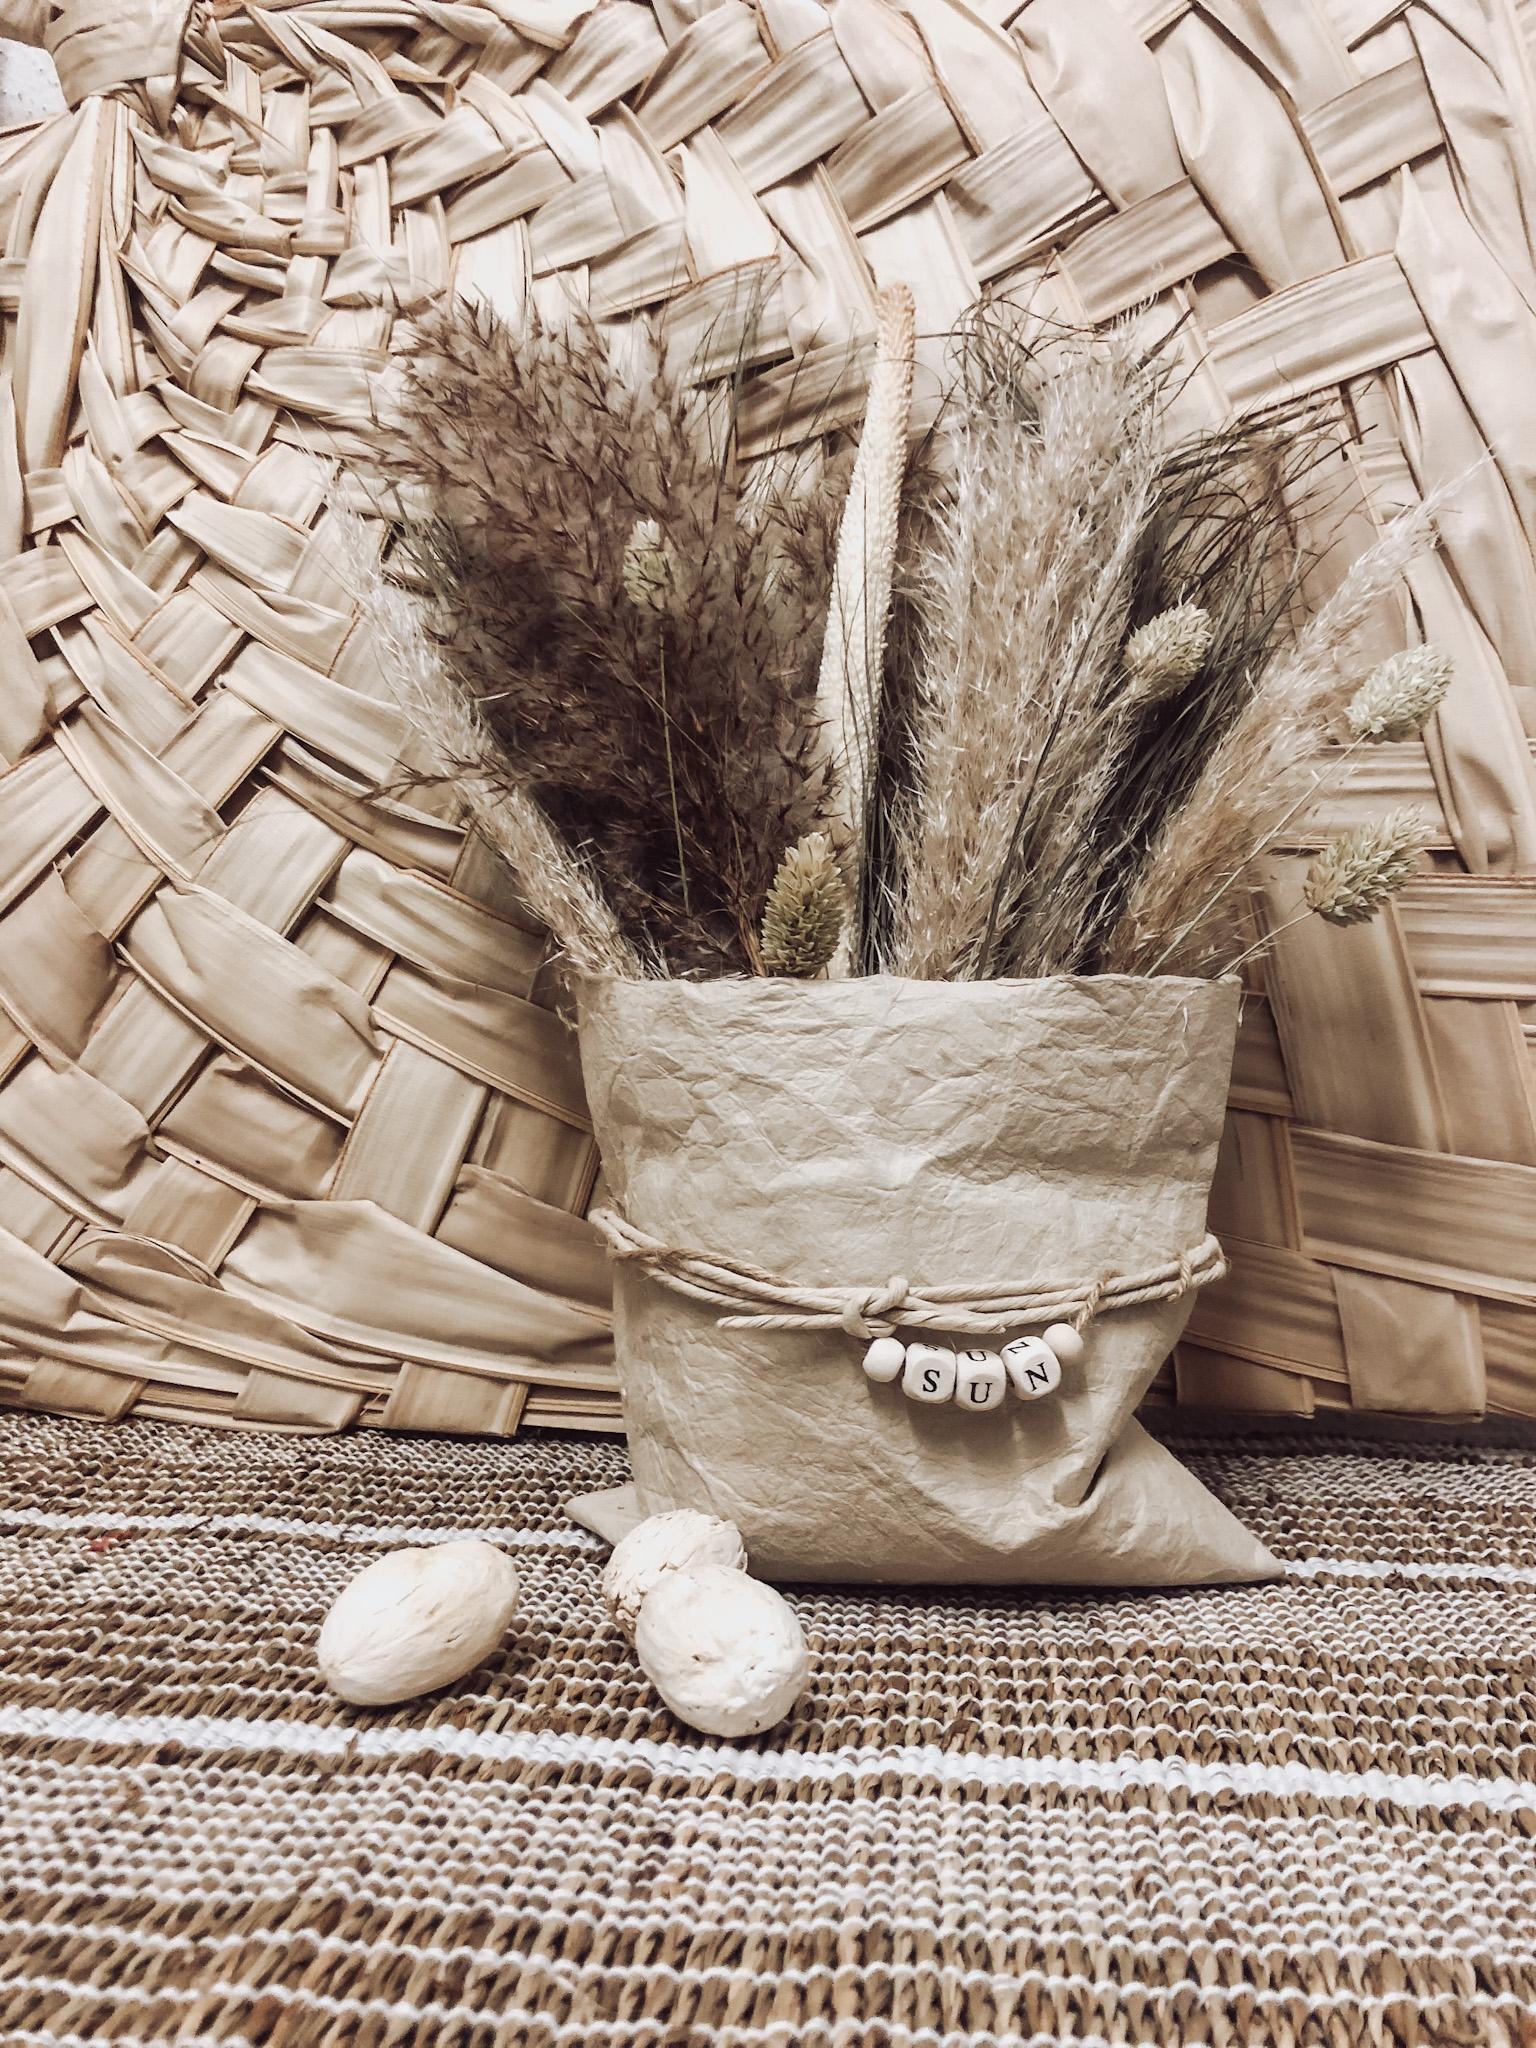 Bag of sunshine 🤍 Handmade Trockenblumen-Tüte mit viel Boho und Good vibes ☮︎
Insta: seasideoflife.shop